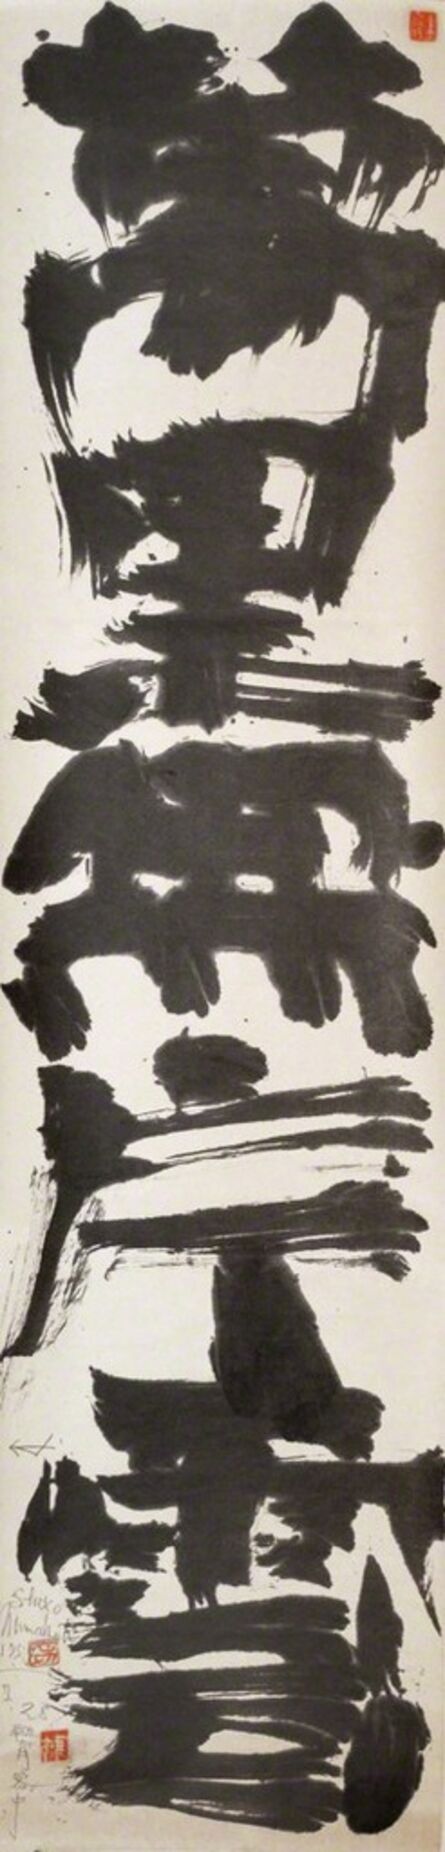 Shiko Munakata, ‘Banri Hen-un Nashi (Cloudless)’, 1959